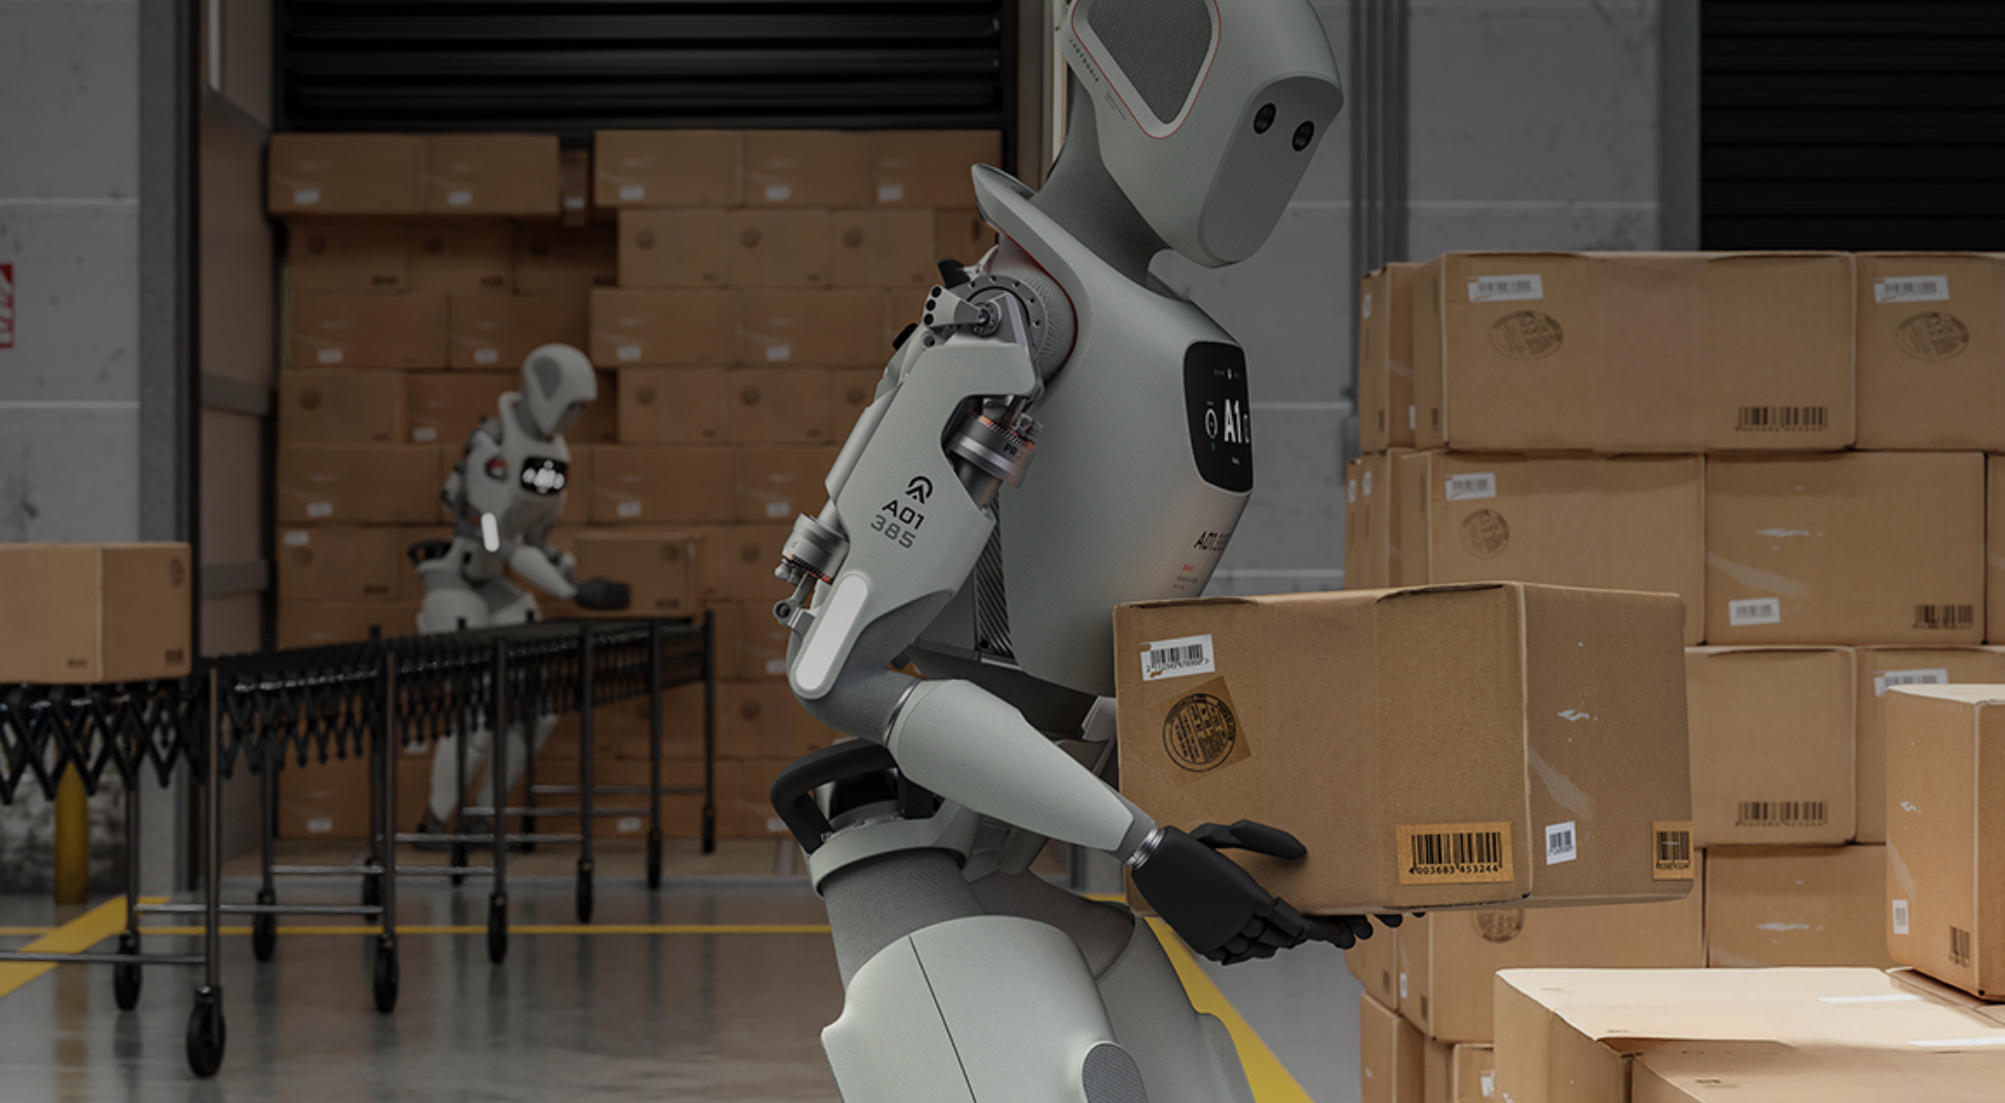 Mercedes планирует внедрить человекоподобных роботов от компании Apptronik для автоматизации задач, требующих низкой квалификации